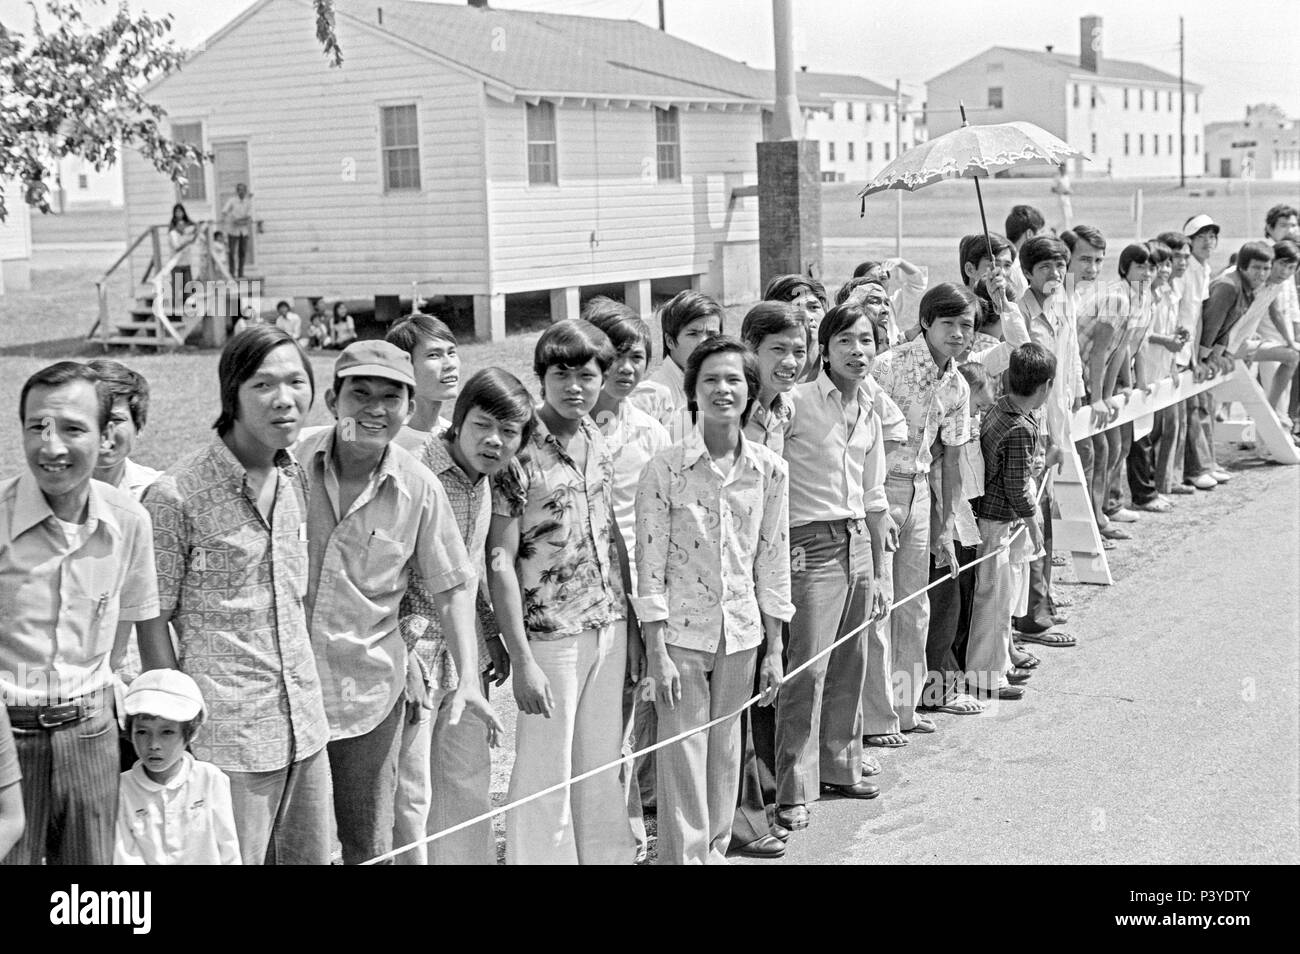 FORT SMITH, AR, USA - 10. AUGUST 1975 - eine Linie der neu angekommenen Vietnamesische Flüchtlinge stehen und für die Weitergabe von Präsident Gerald Ford warten. Der Präsident ist zu touring das Fort Chaffee vietnamesischer Flüchtling Zentrum sein und einladend Die evakuierten Südvietnamesischen in die Vereinigten Staaten. Hinter den Menschen steht die Zeilen der Kasernengebäude, dass die Flüchtlinge untergebracht. Stockfoto